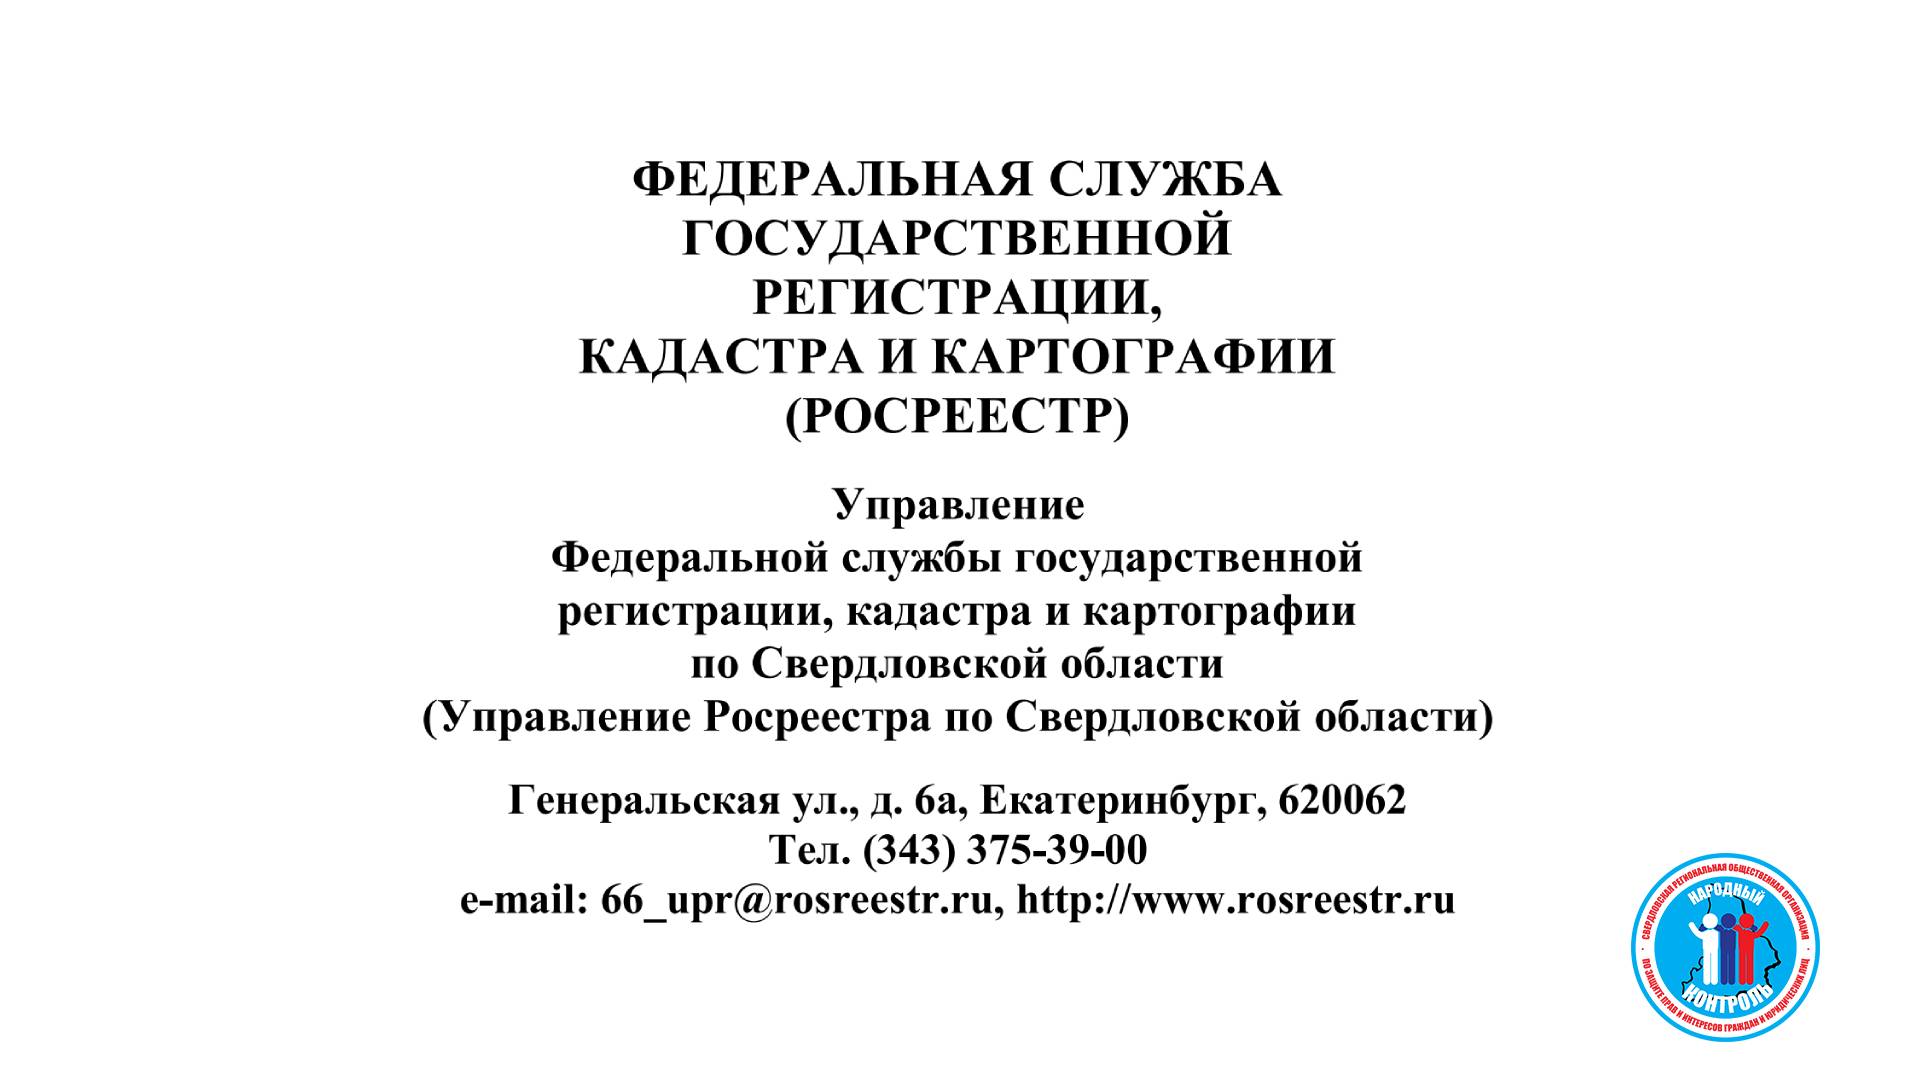 Росреестр Свердловской области Федеральная служба государственной регистрации, кадастра и картографии